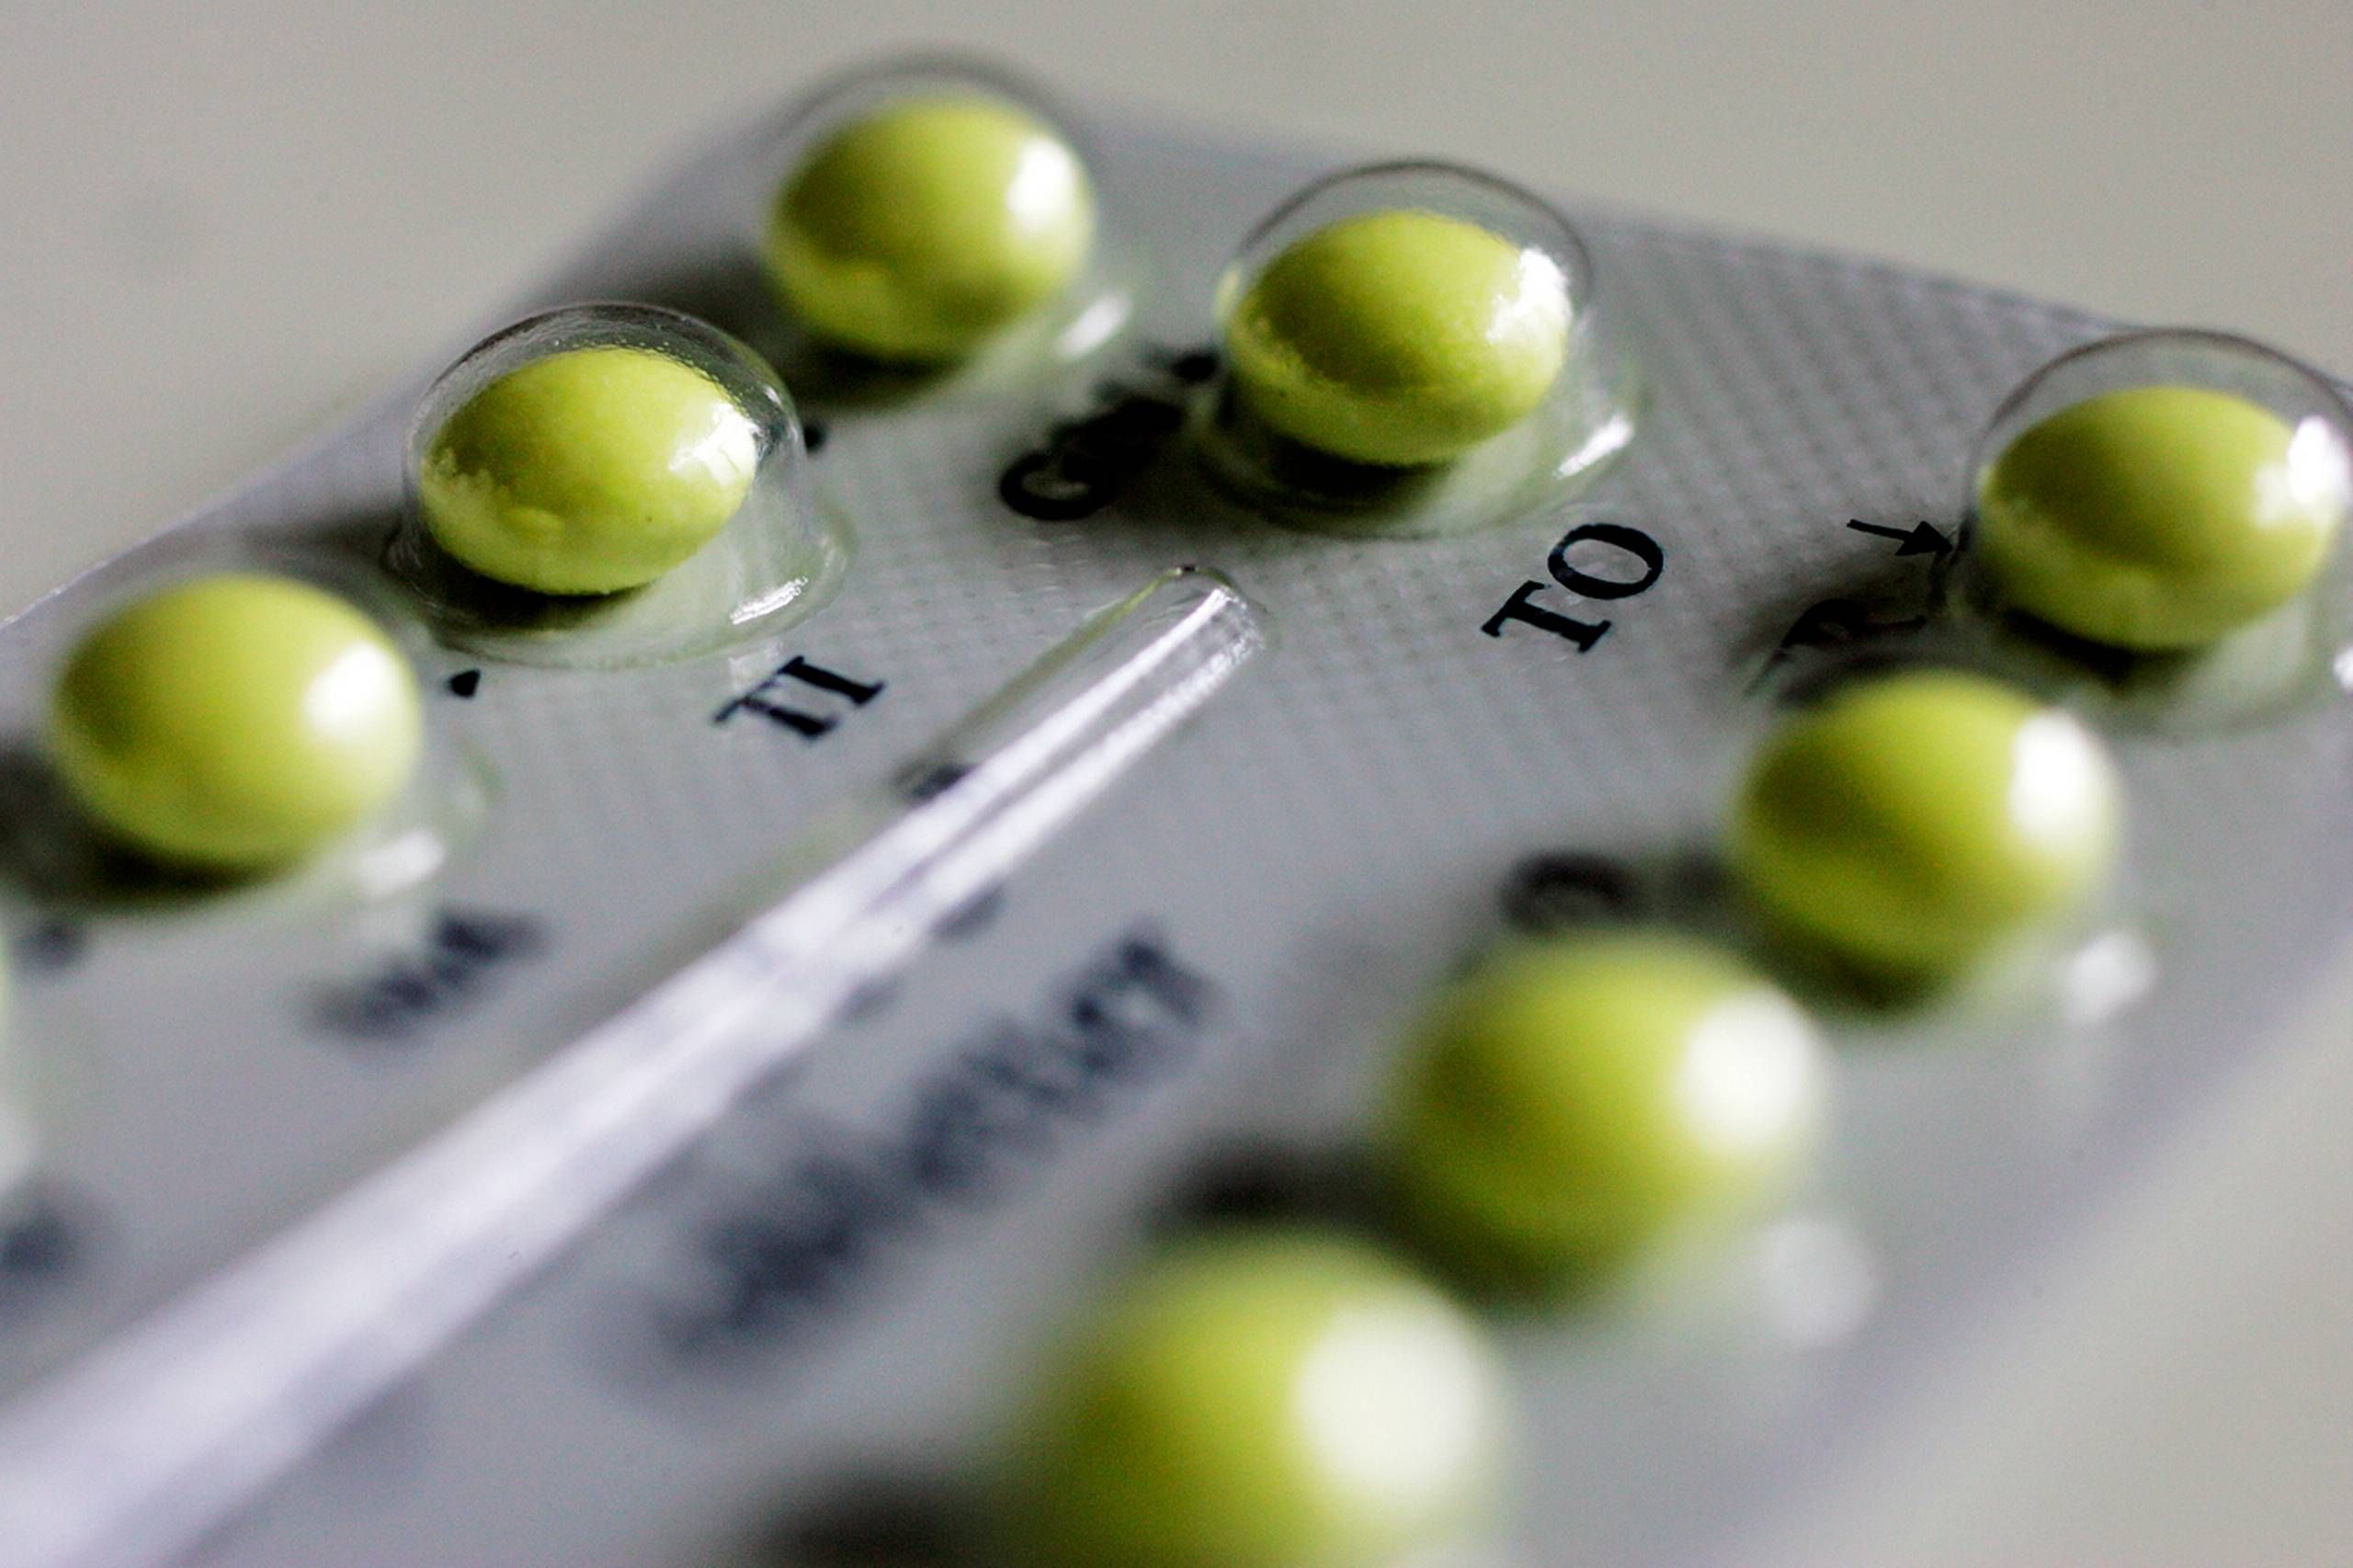 stivhed Fortære opkald P-piller beskytter mod mere end graviditet